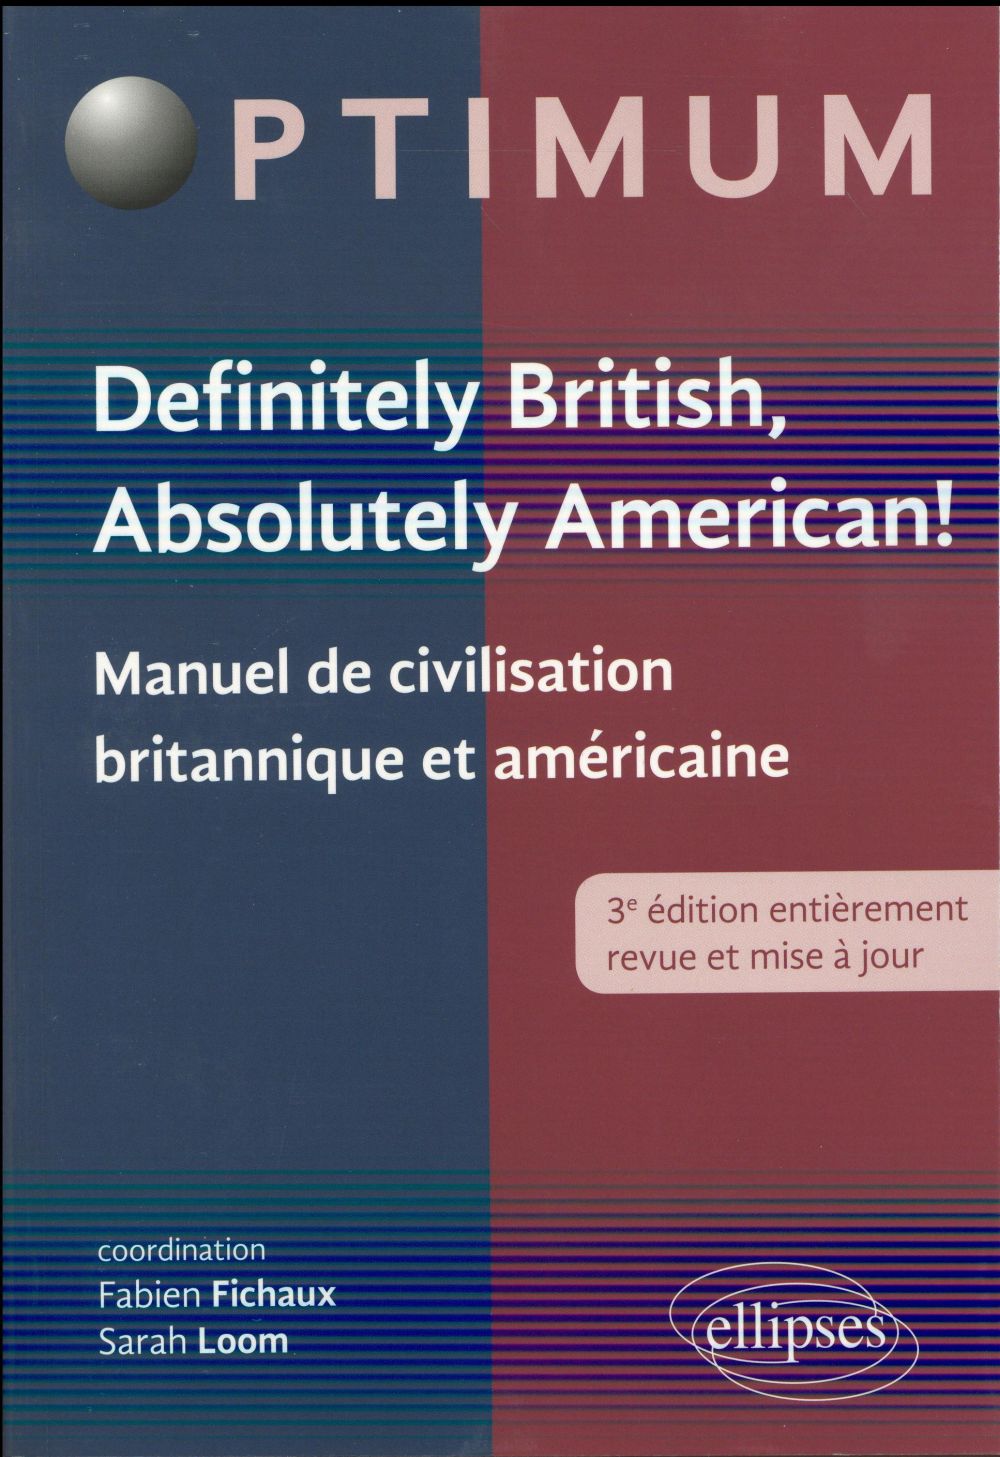 DEFINITELY BRITISH, ABSOLUTELY AMERICAN! - MANUEL DE CIVILISATION BRITANNIQUE ET AMERICAINE - 3E EDI